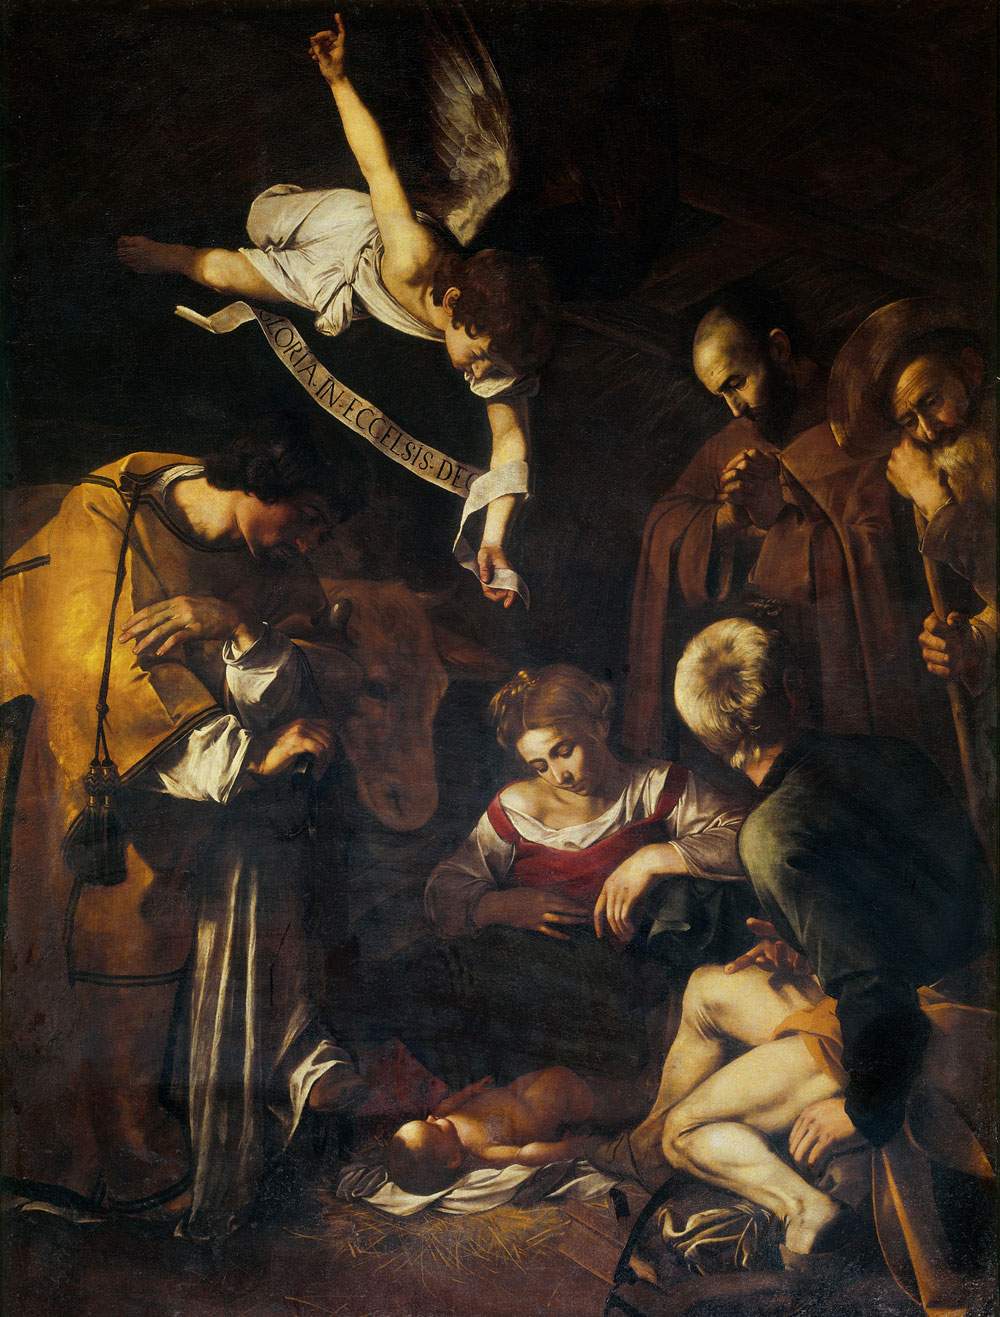 Tomaso Montanari sul furto del Caravaggio. Anteprima del nuovo manuale “Arte. Una storia naturale e civile”